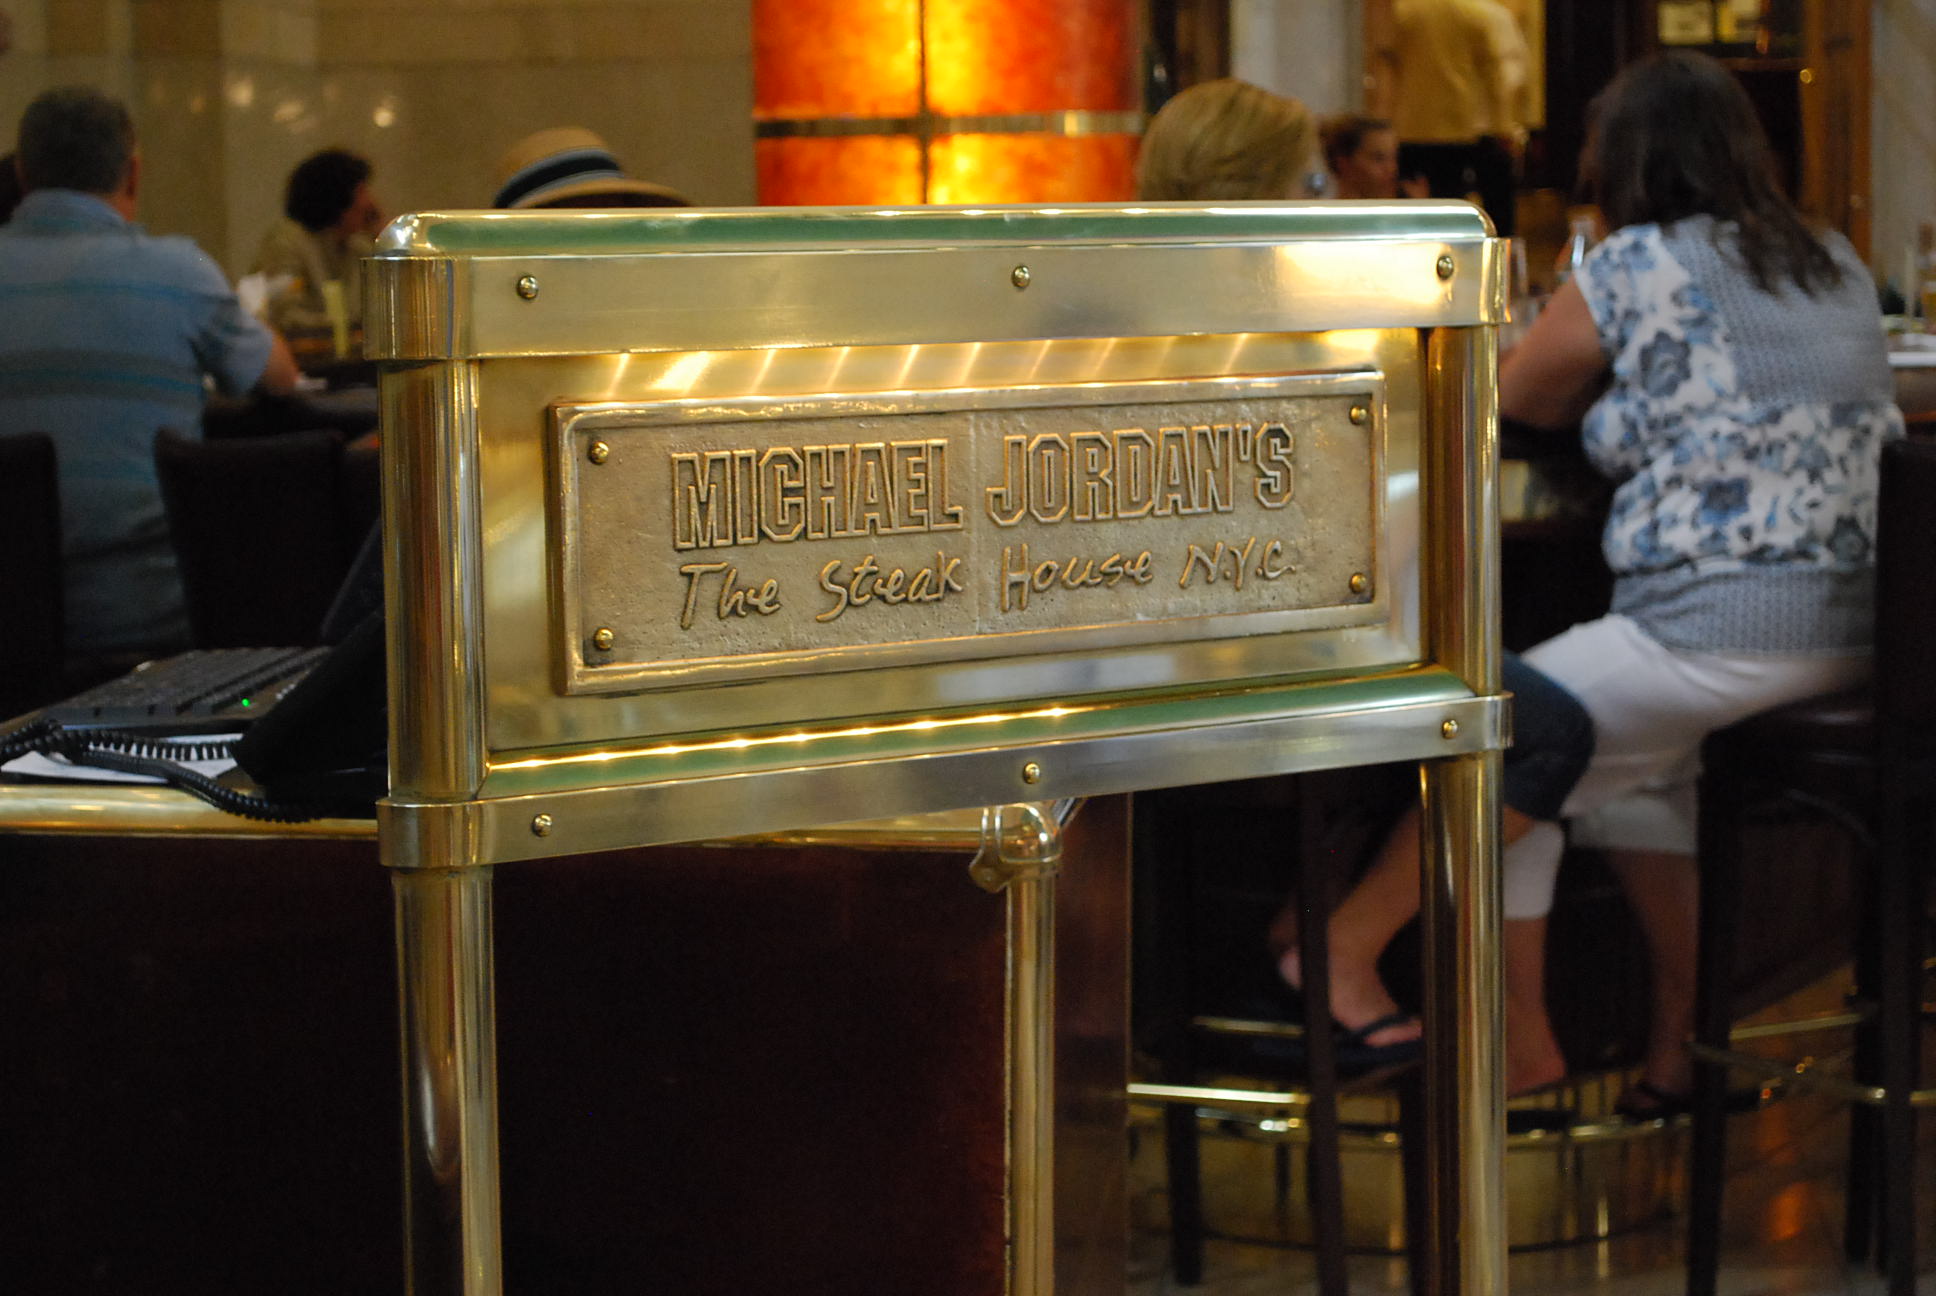 Michael Jordan's The Steak House N.Y.C.